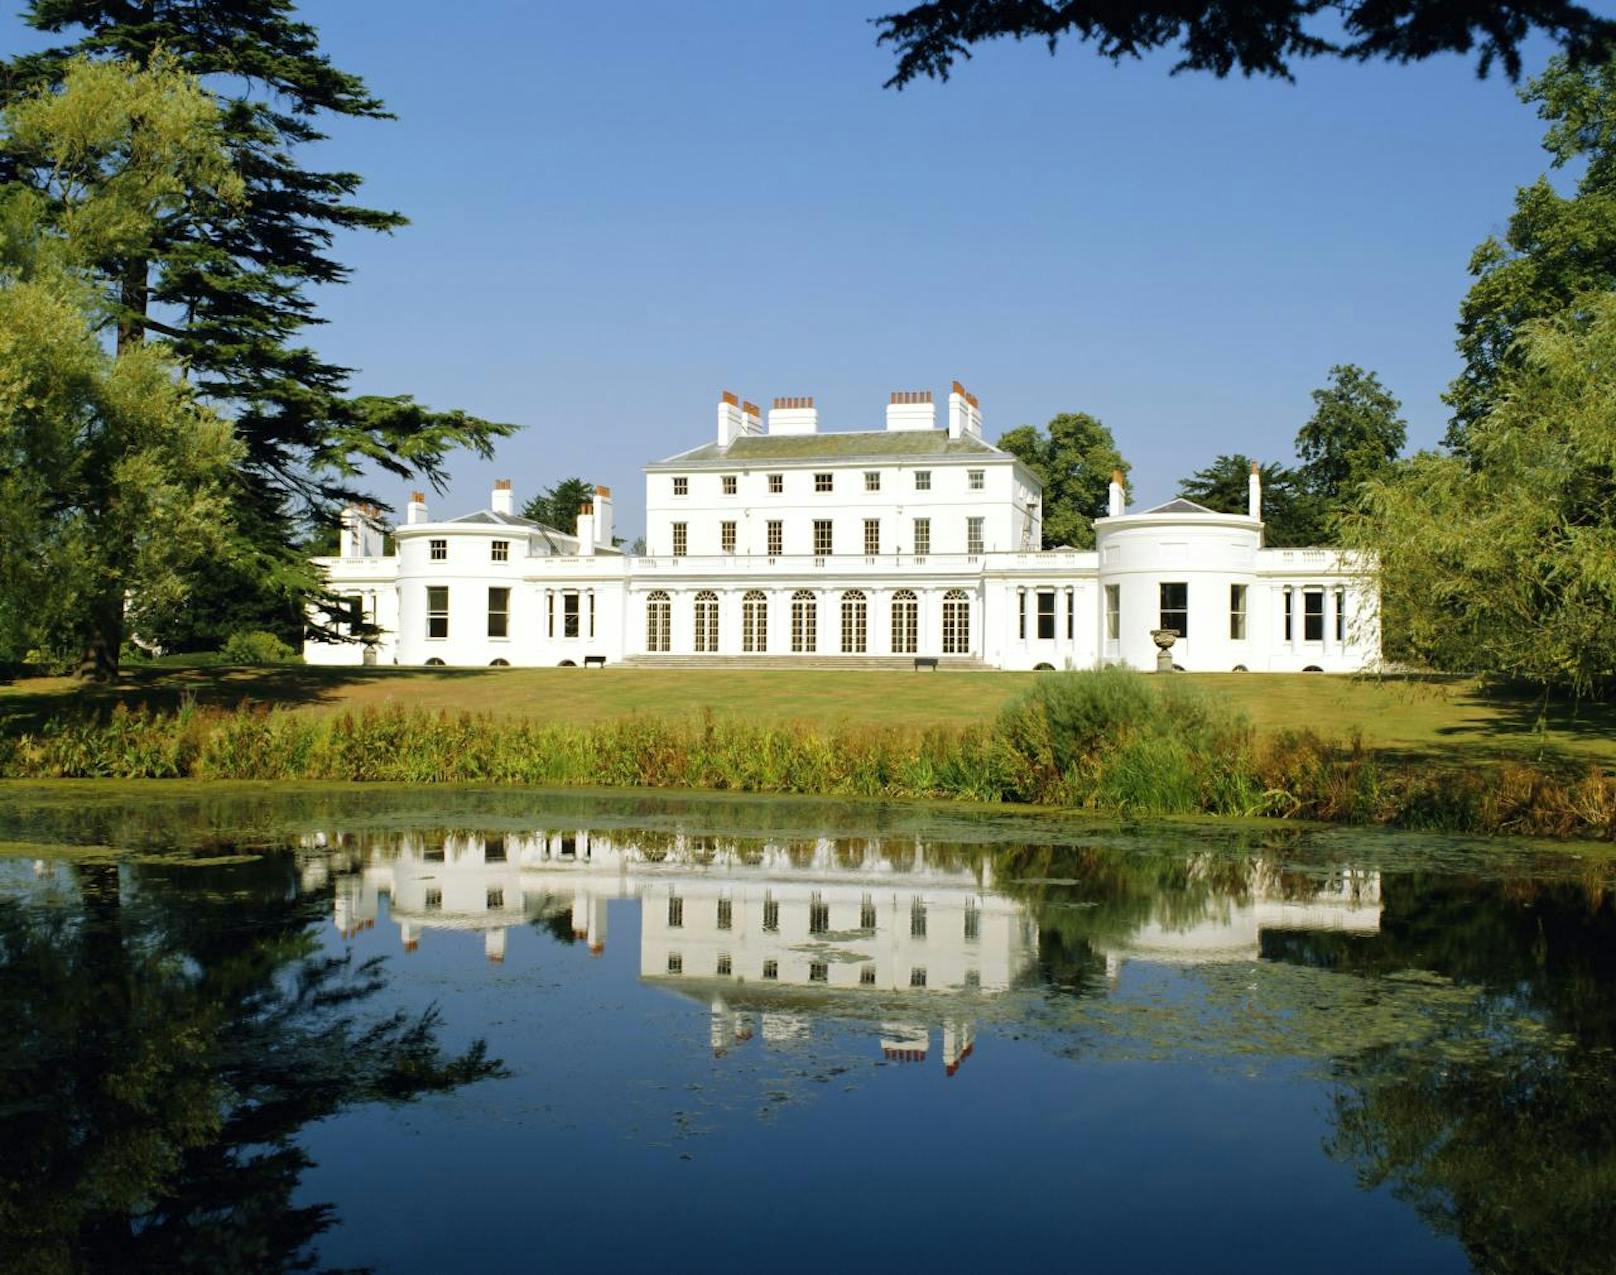 So lebte sie als Royal in England: Frogmore House ist in den Gärten von Windsor, dem Wohnsitz der Queen.